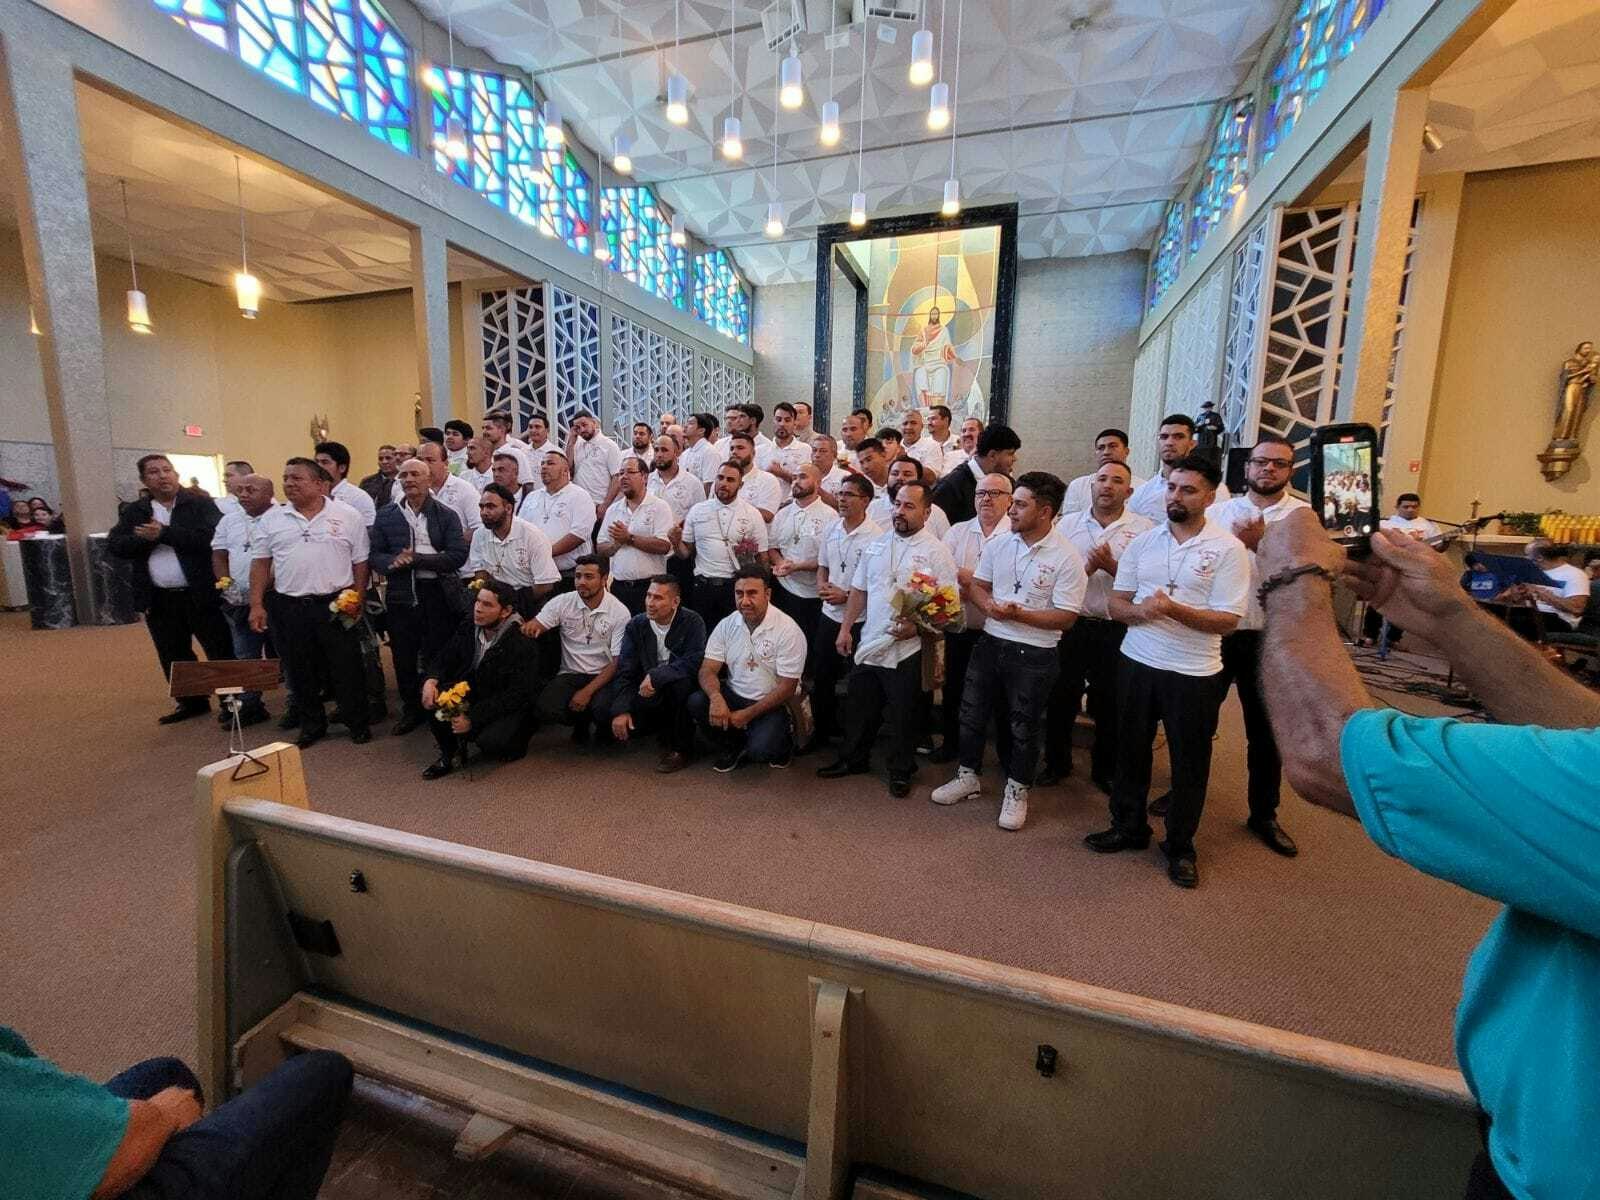 Clausura de un retiro de Emaús para hombres. Foto cortesía del equipo organizador para Detroit Catholic en Español.